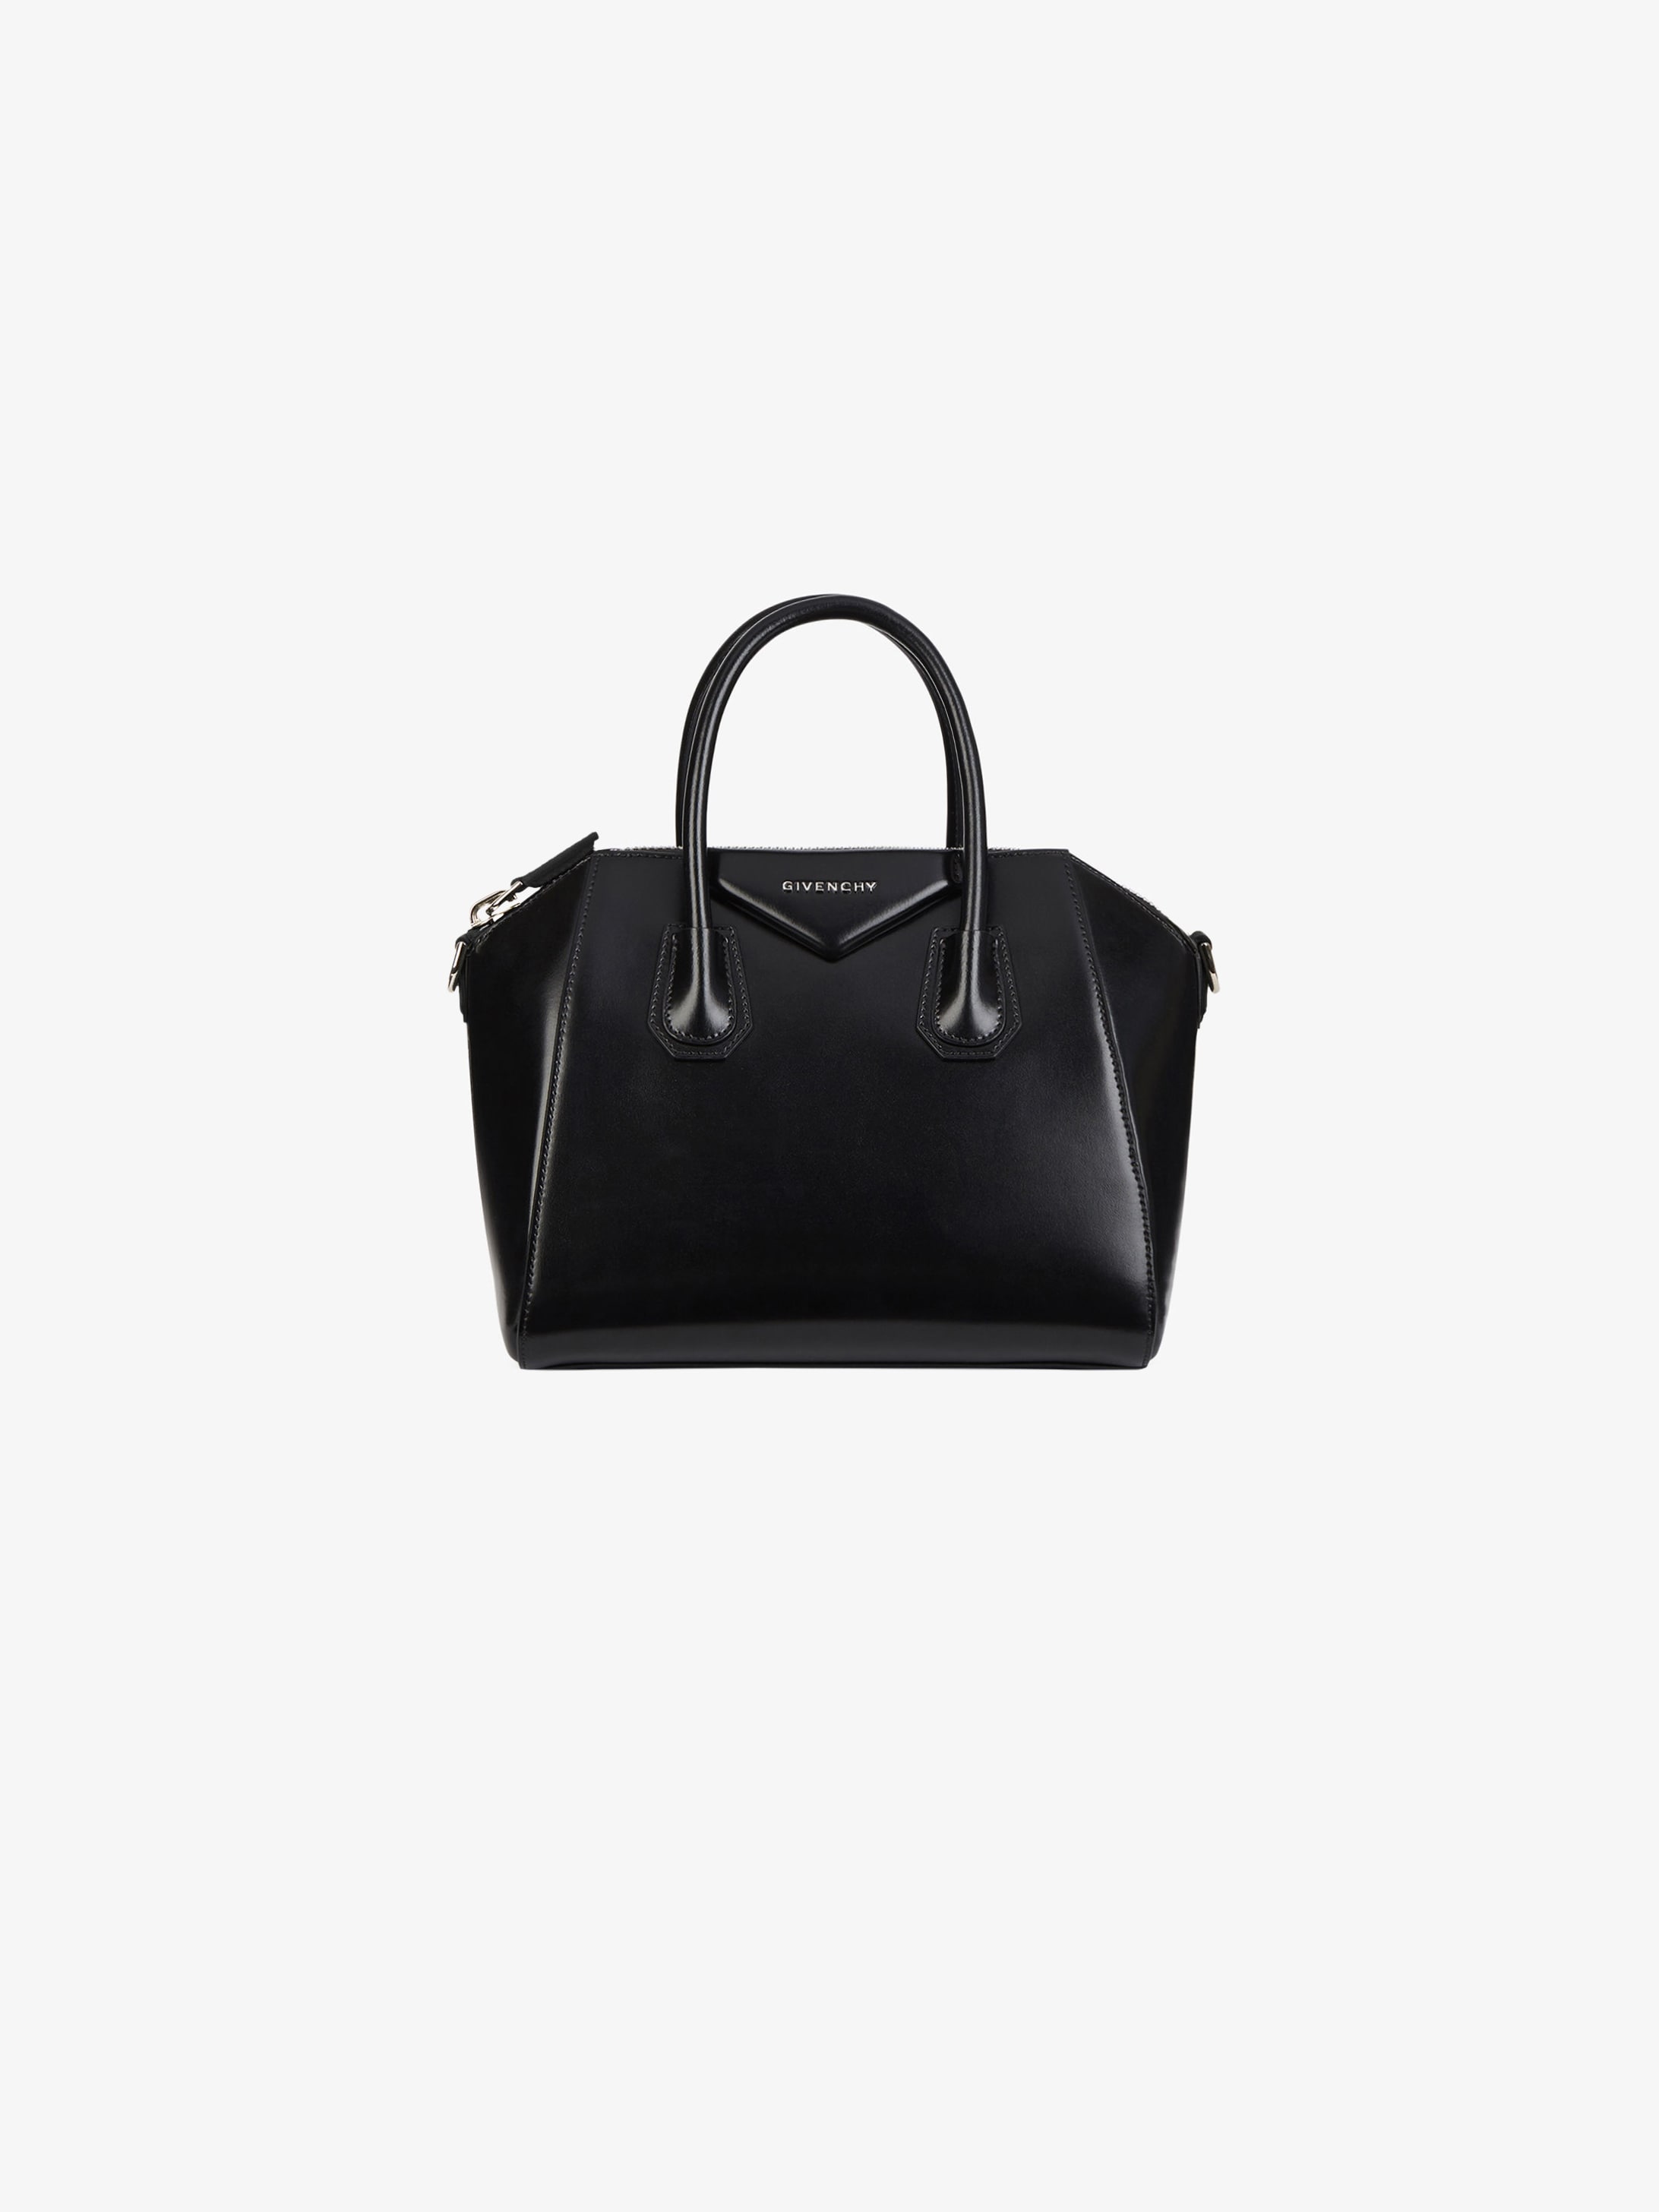 Givenchy Small Antigona Bag | SEMA Data Co-op